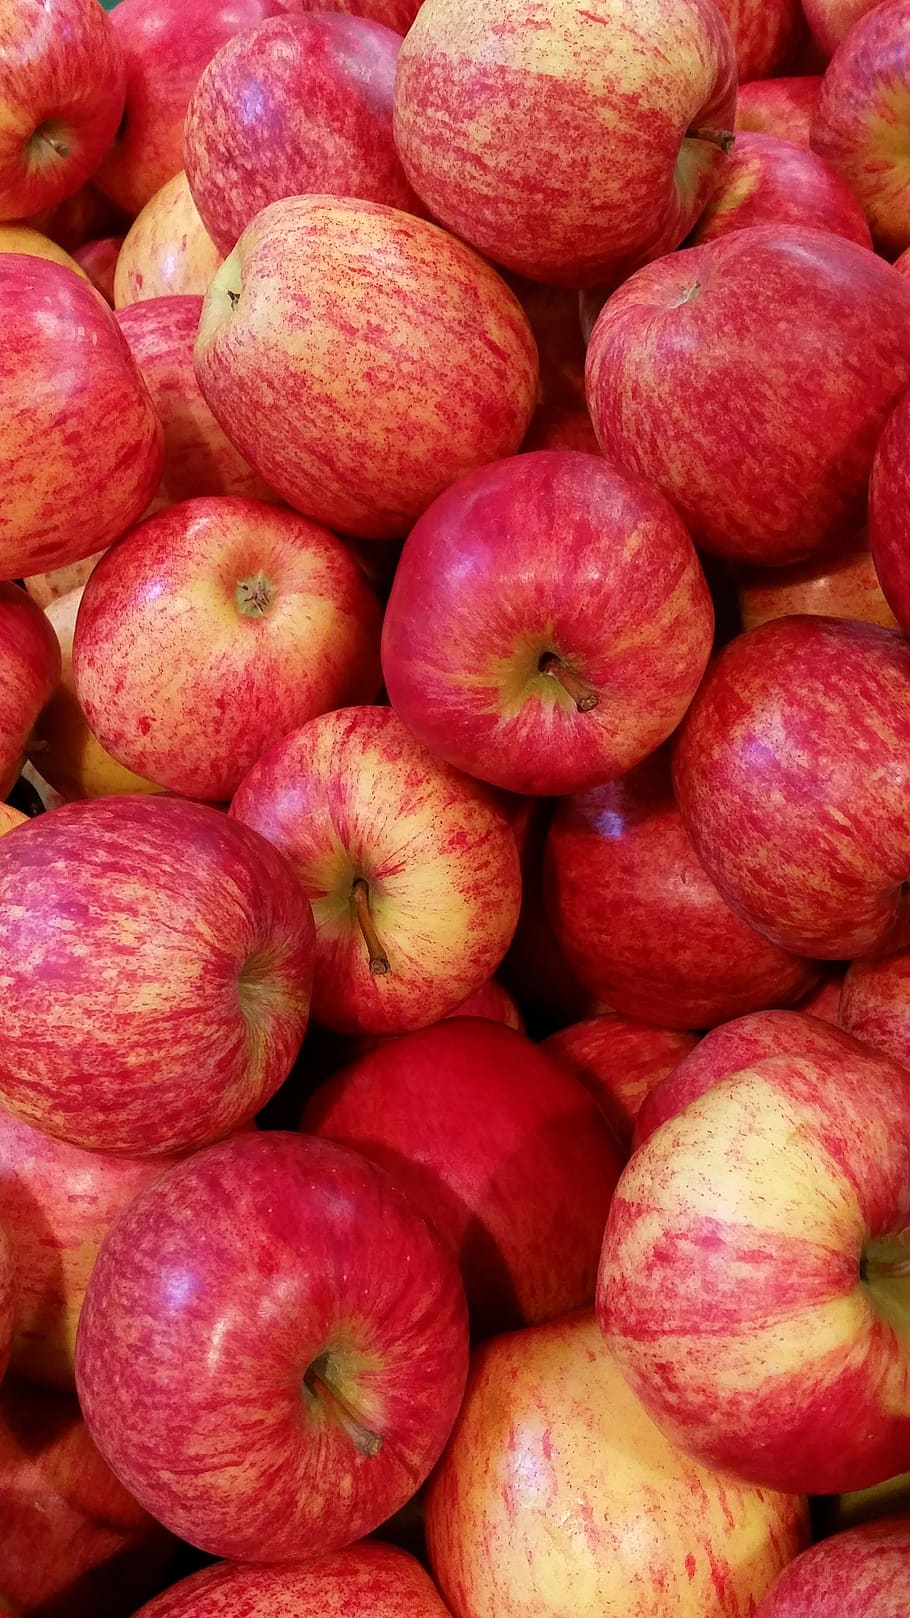 apel, merah, buah, sehat, vitamin, pangan, kesehatan, apel merah, pasar petani lokal, segar